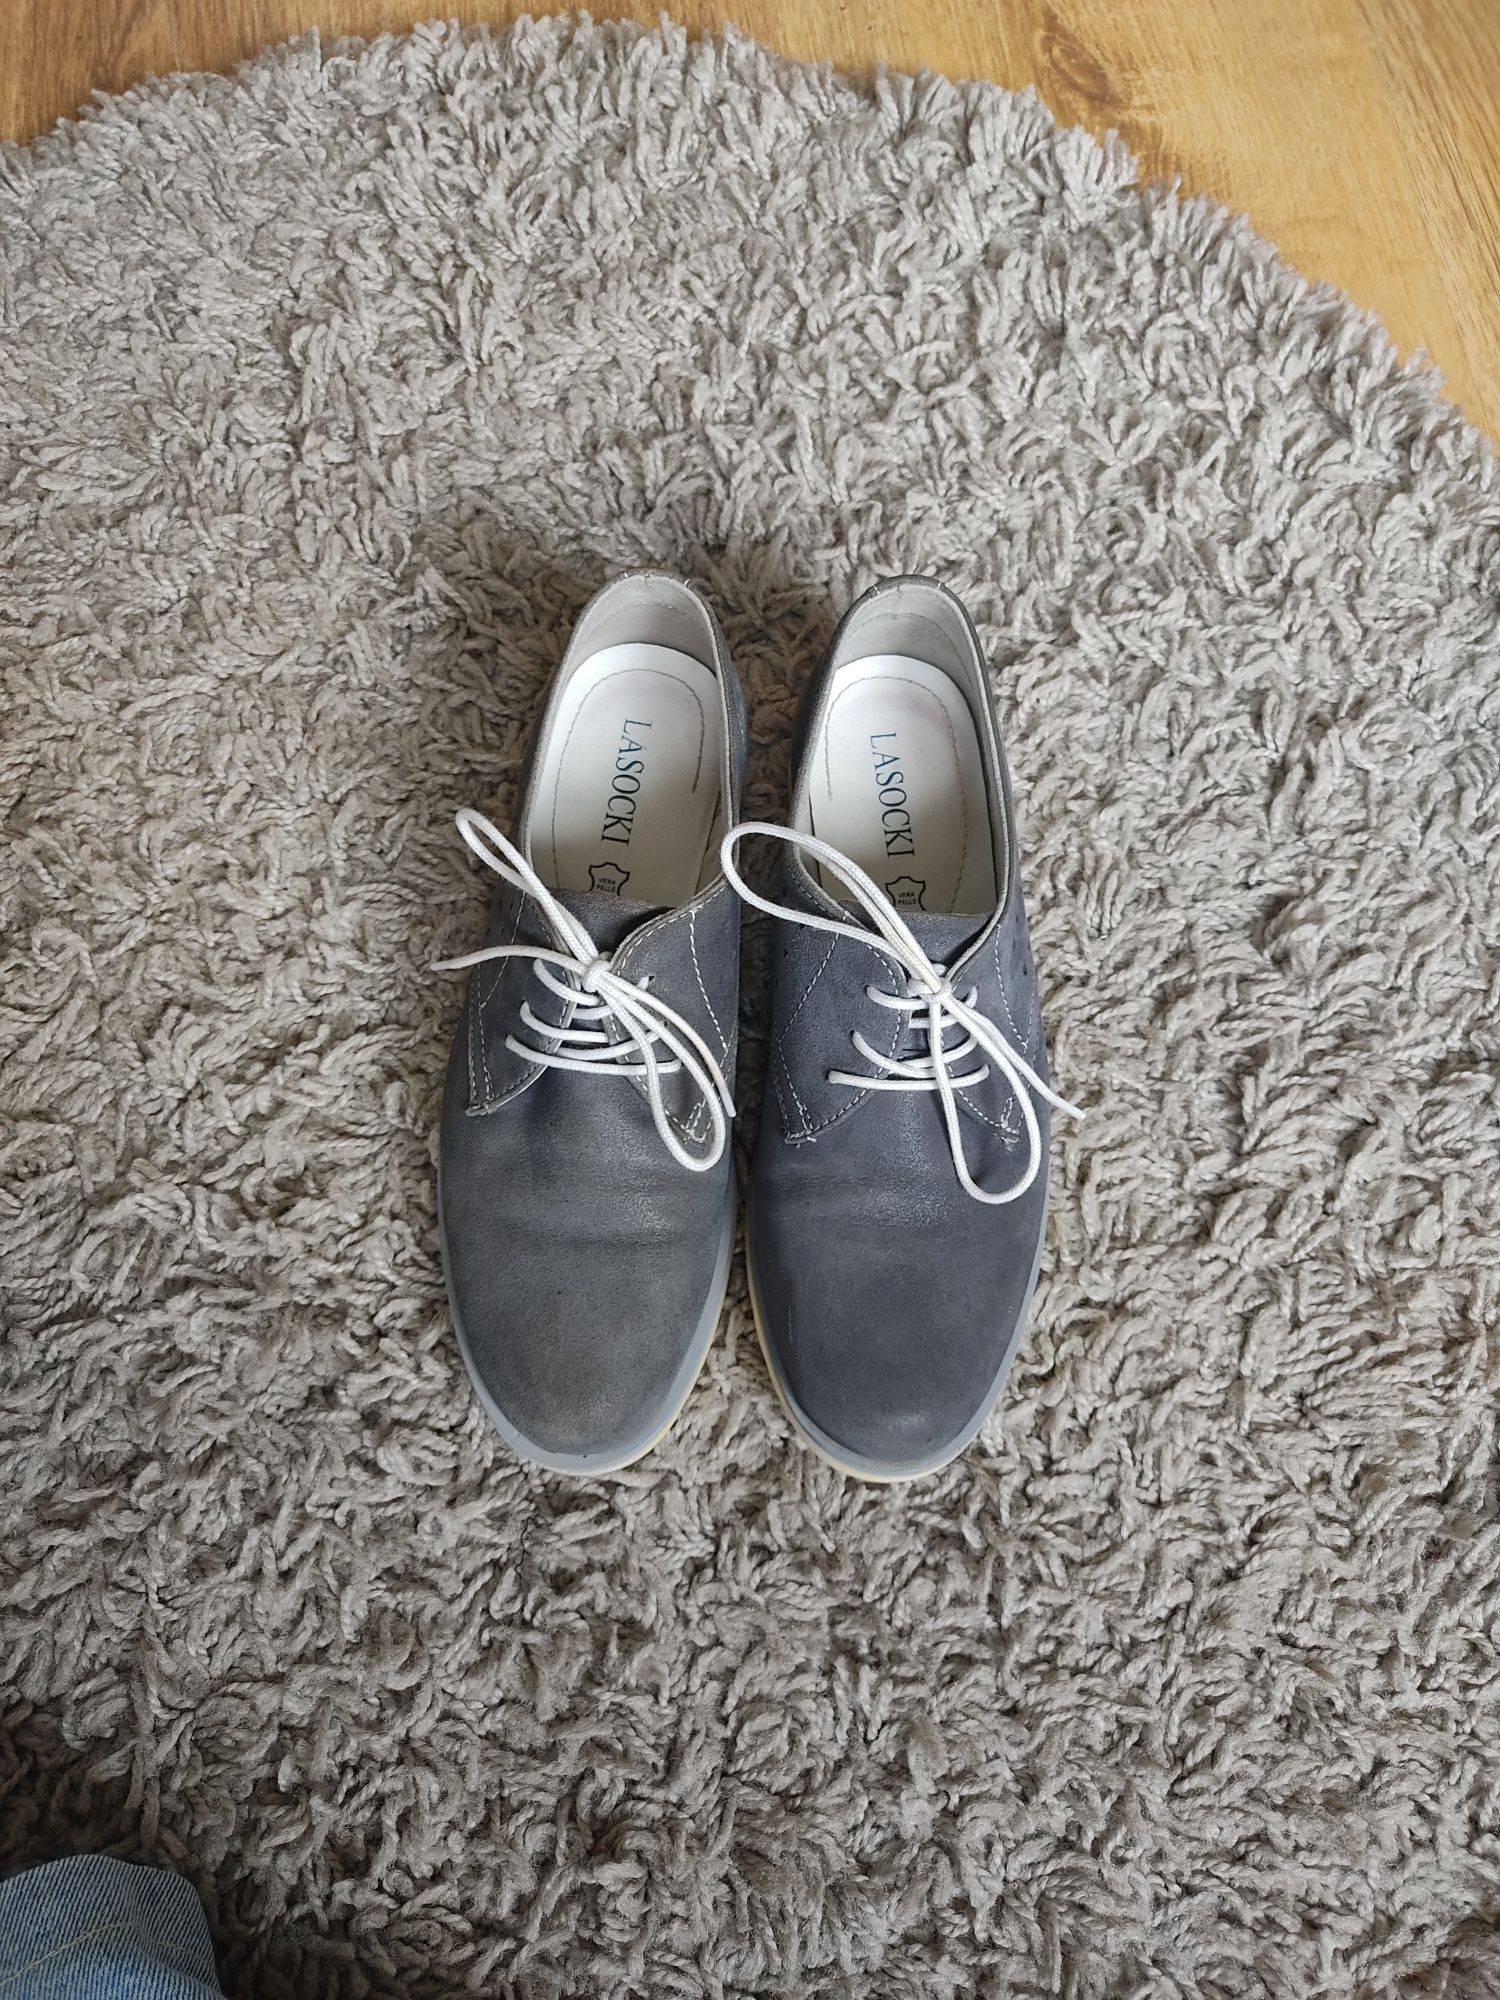 Niebieskie zamszowe skórzane buty z Lasockiego CCC 37 Oxfordy mokasyny